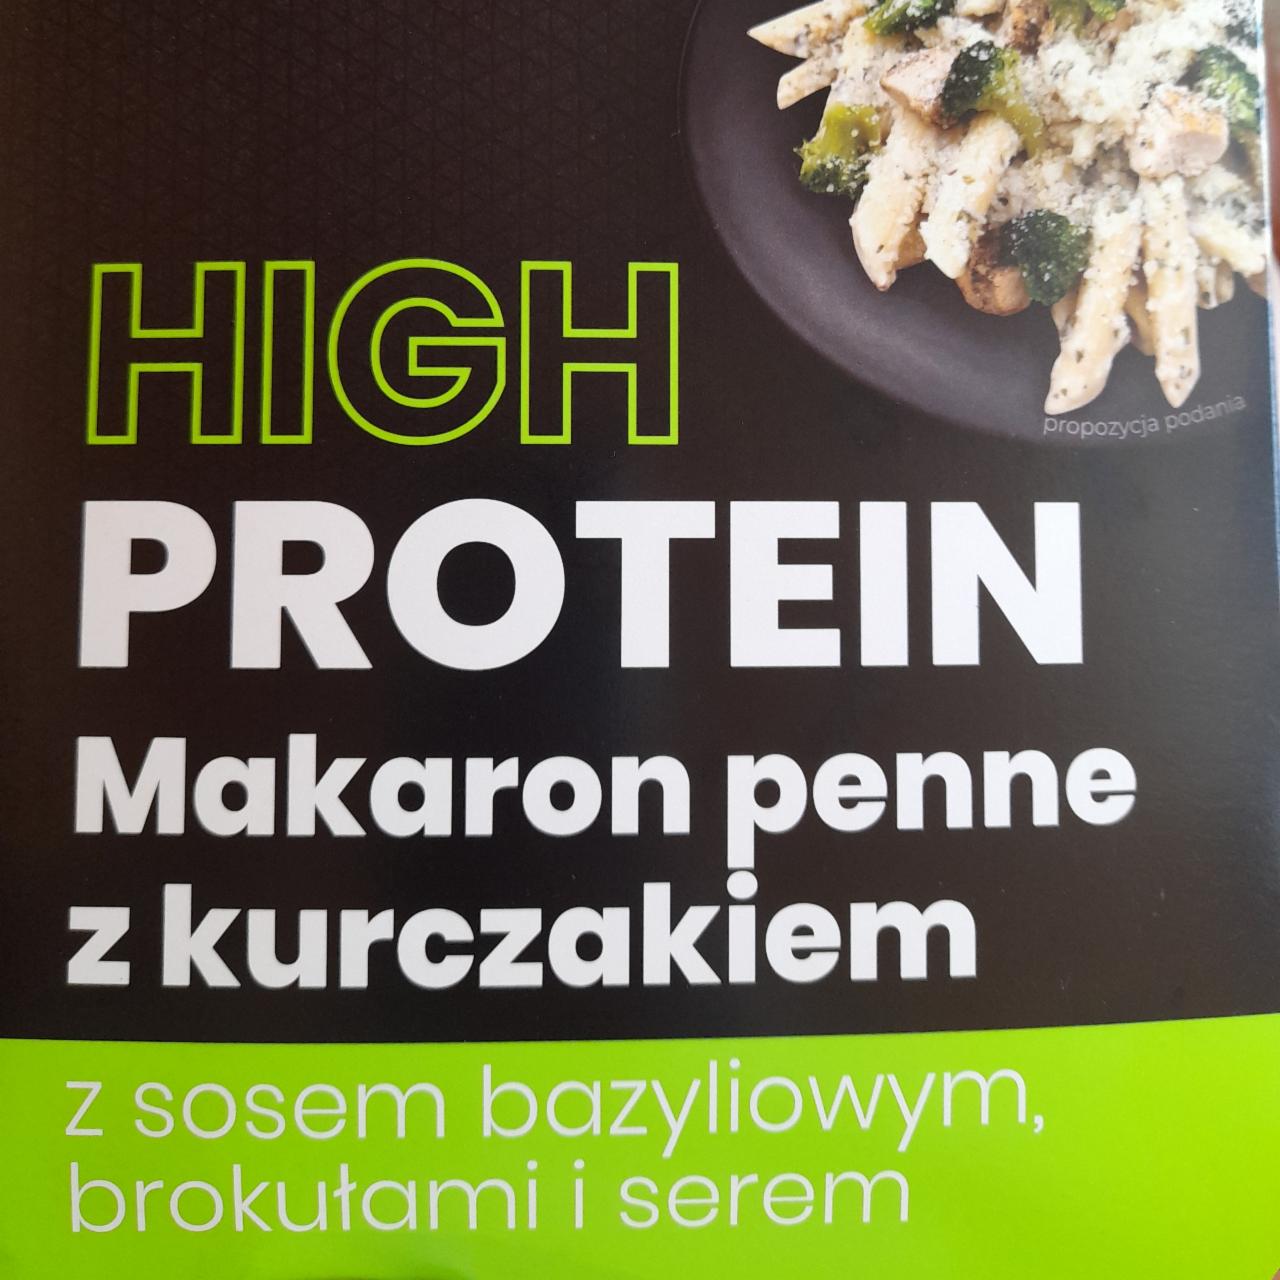 Zdjęcia - High Protein Makaron Penne z kurczakiem z sosem bazyliowym, brokułami i serem Virtu